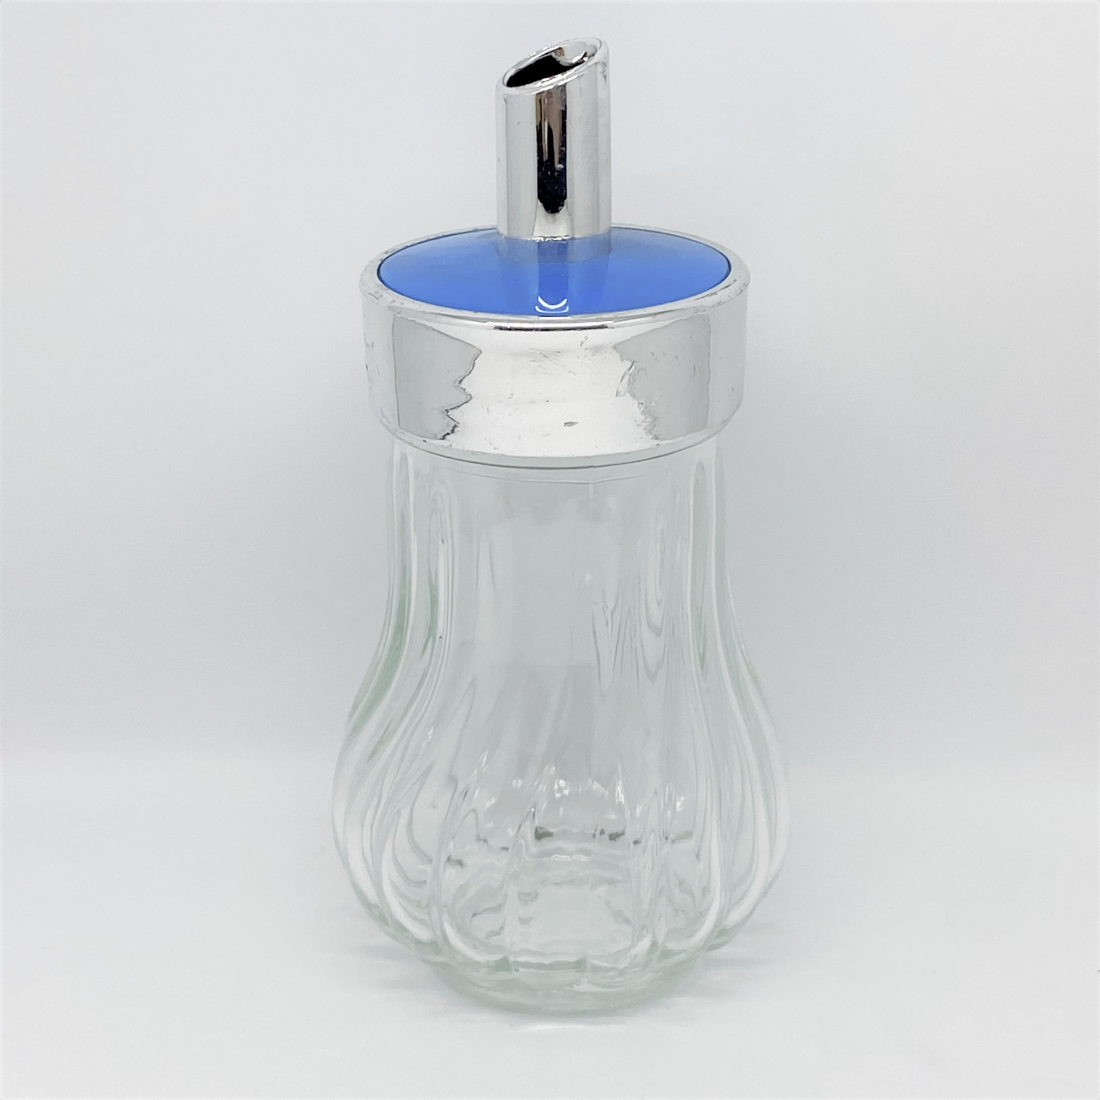 Azucarero Dosificador De Cristal Y Acero Inoxidable, tapa de rosca de acero  inoxidable, con dosificador (Tubo/diámetro 7,5 cm, altura: 17 cm